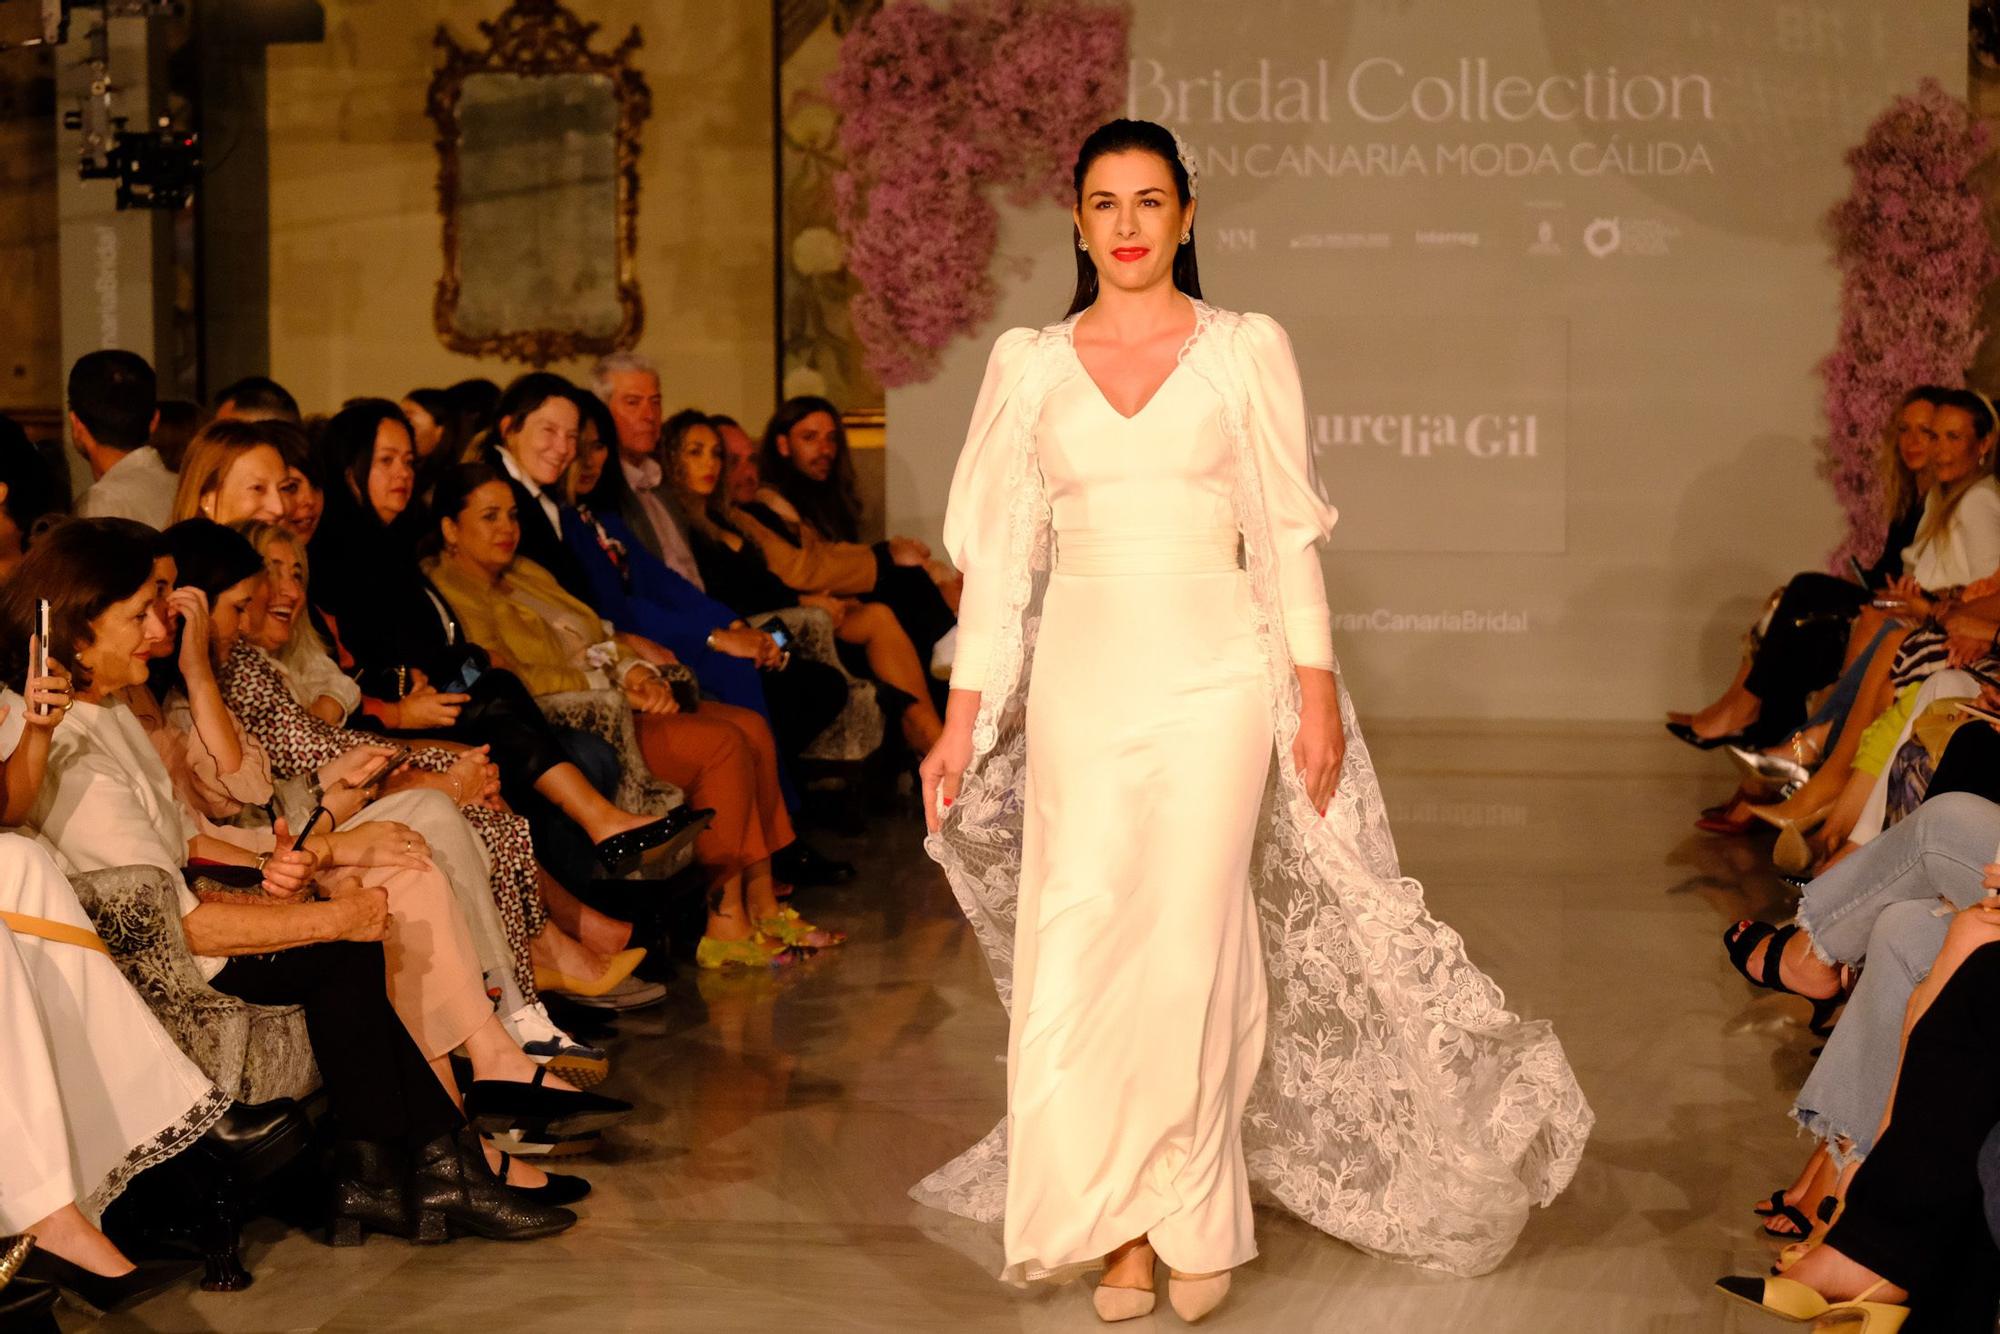 Desfile de Aurelia Gil en la segunda jornada del Bridal Collection Gran Canaria Moda Cálida